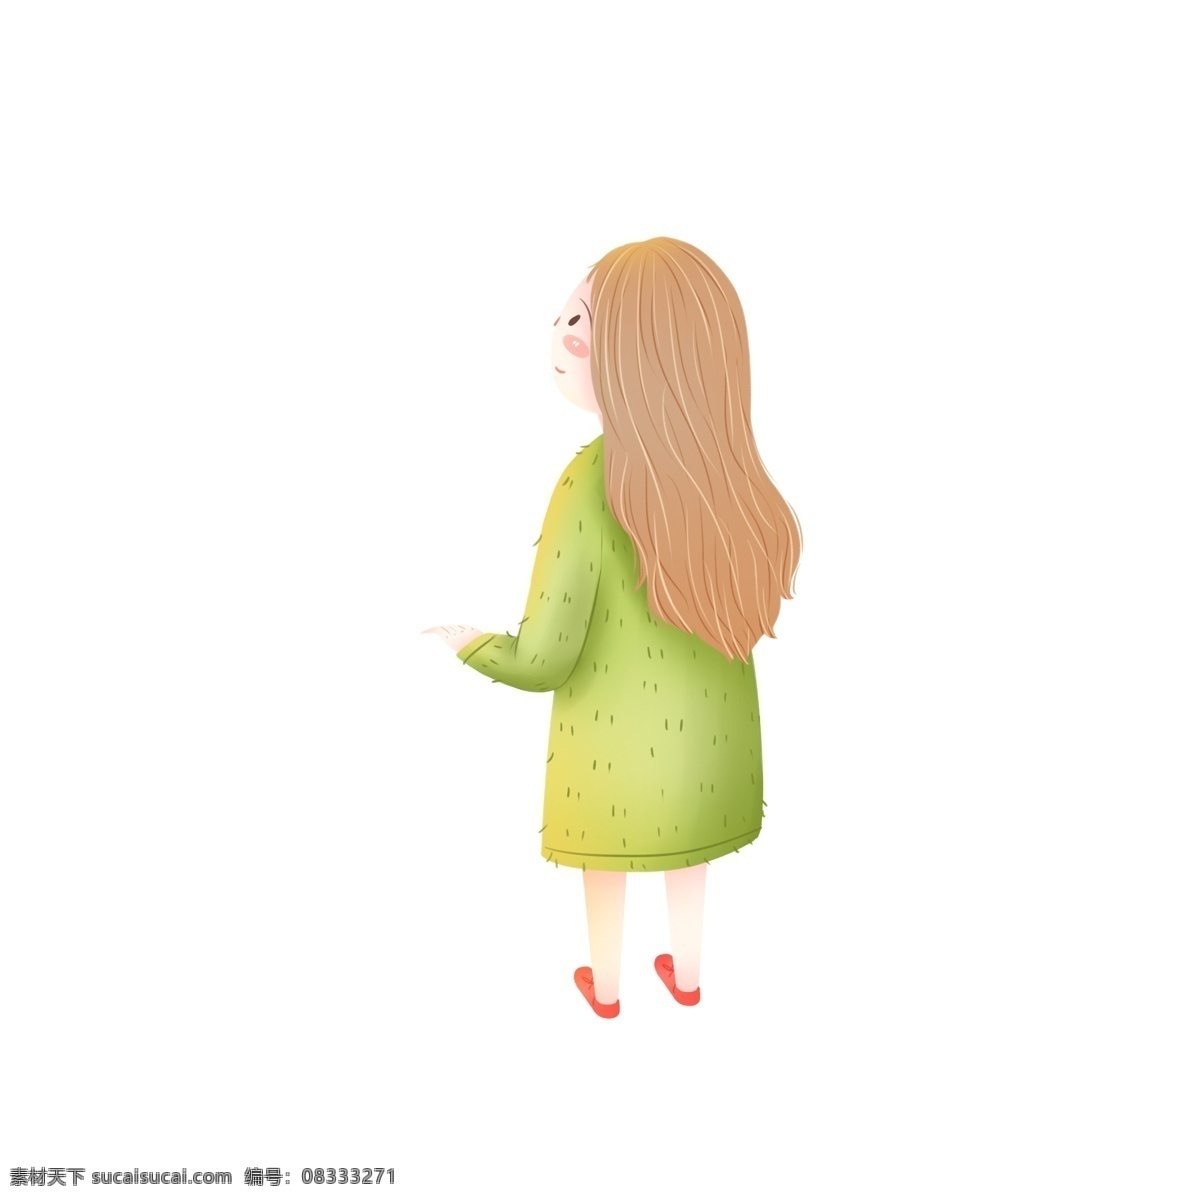 卡通 可爱 穿着 绿色 裙子 女孩 简约 手绘 人物 插画 背影 少女